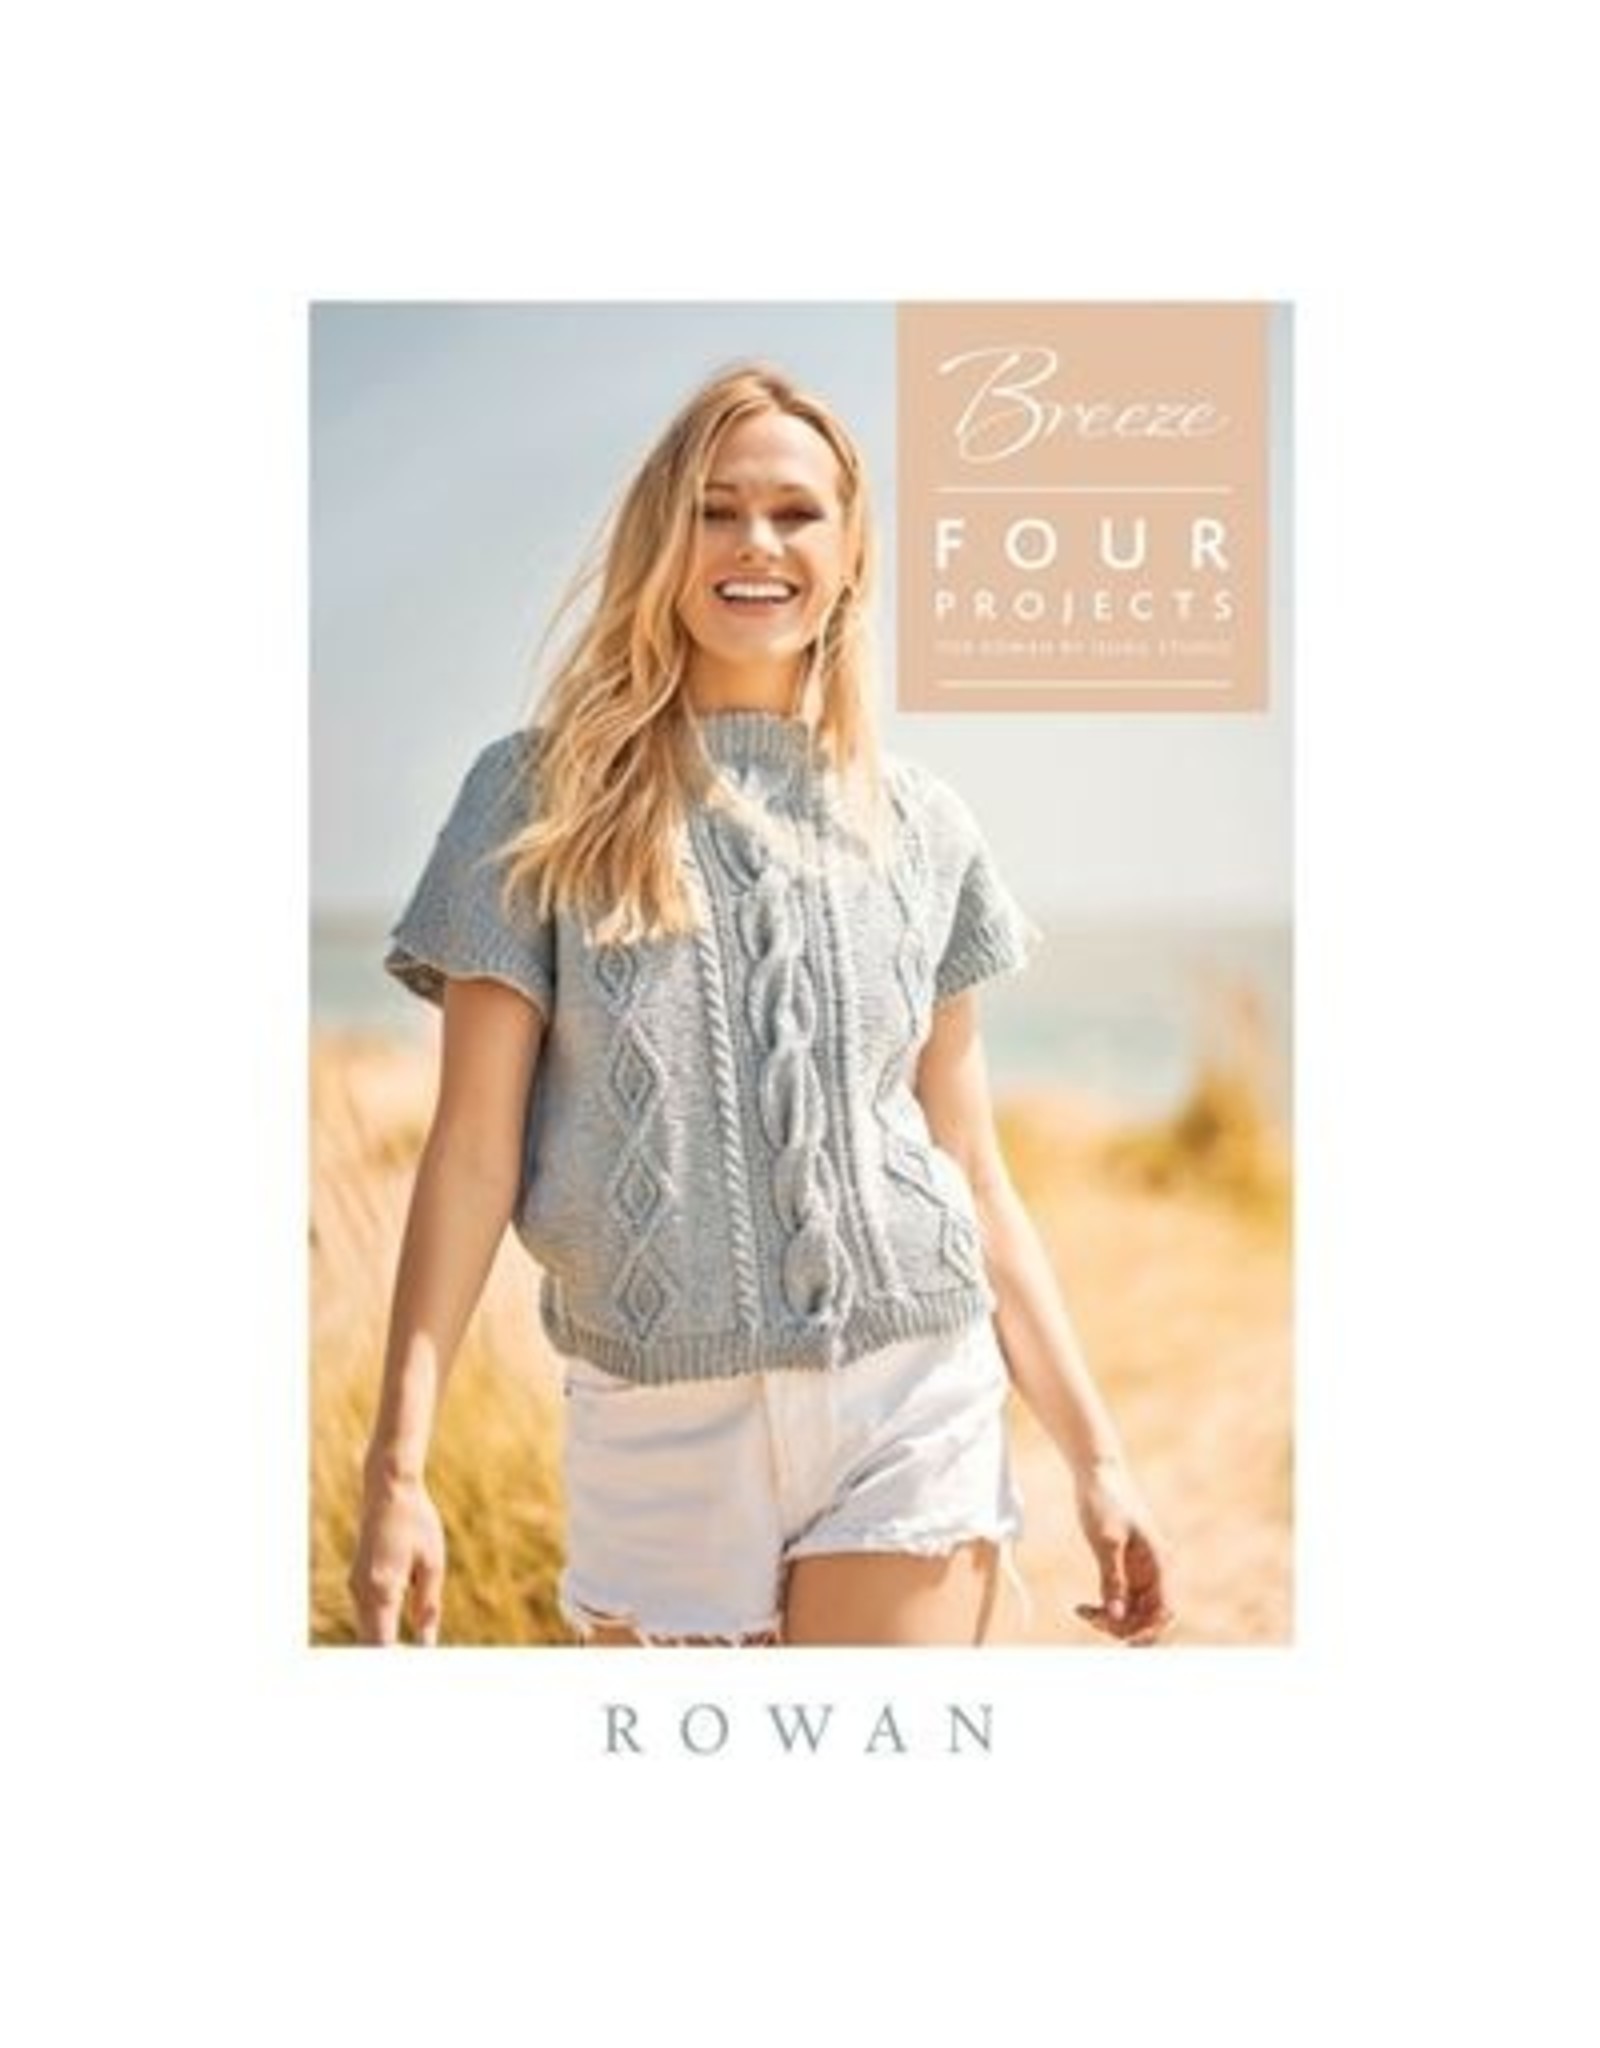 Rowan Rowan Breeze: 4 projects